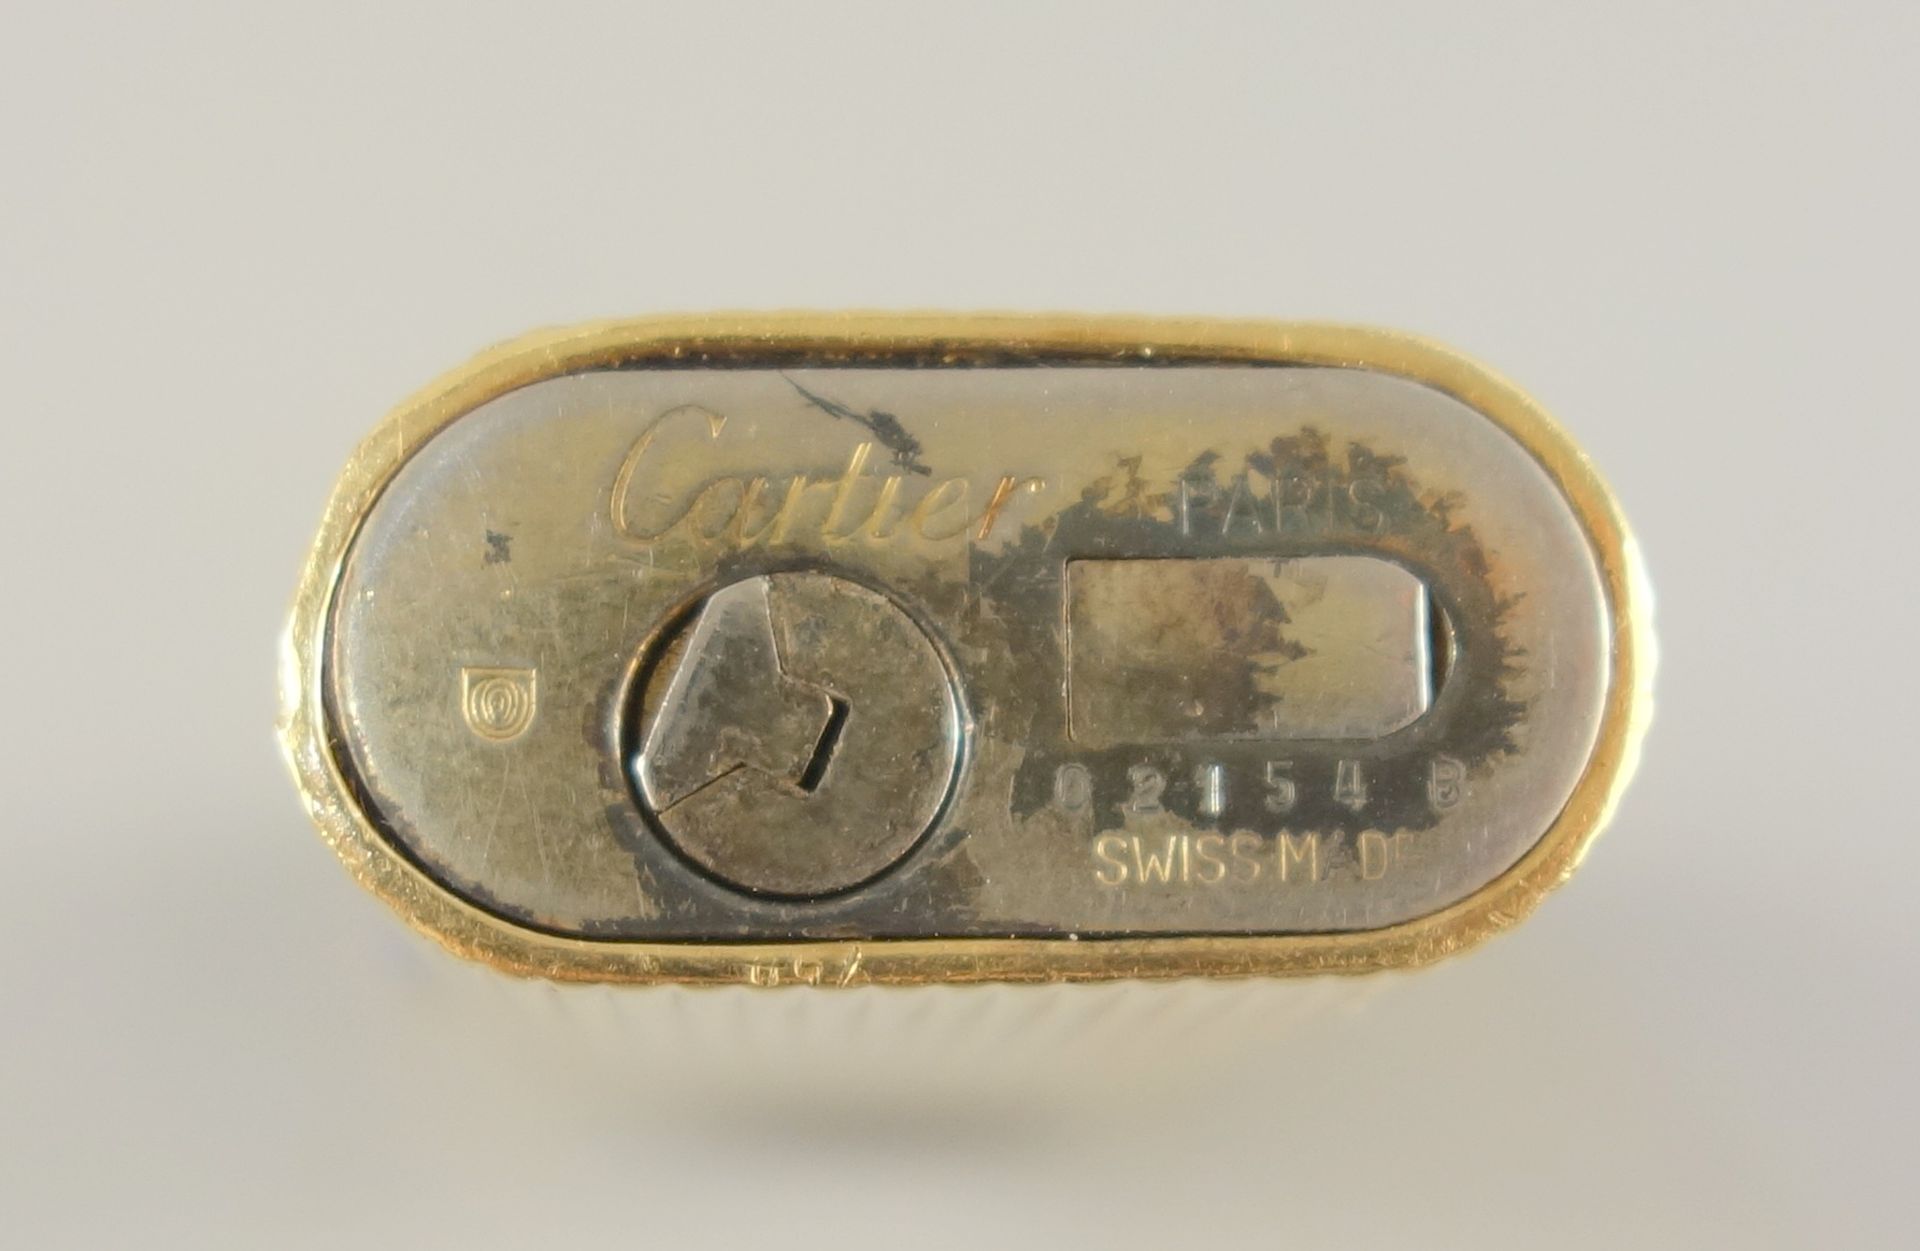 Feuerzeug, Cartier, vergoldet, Deckel mit eingesetztem Lapislazuli, Nr.02154 B, Gehäuse mehrfach - Bild 3 aus 3